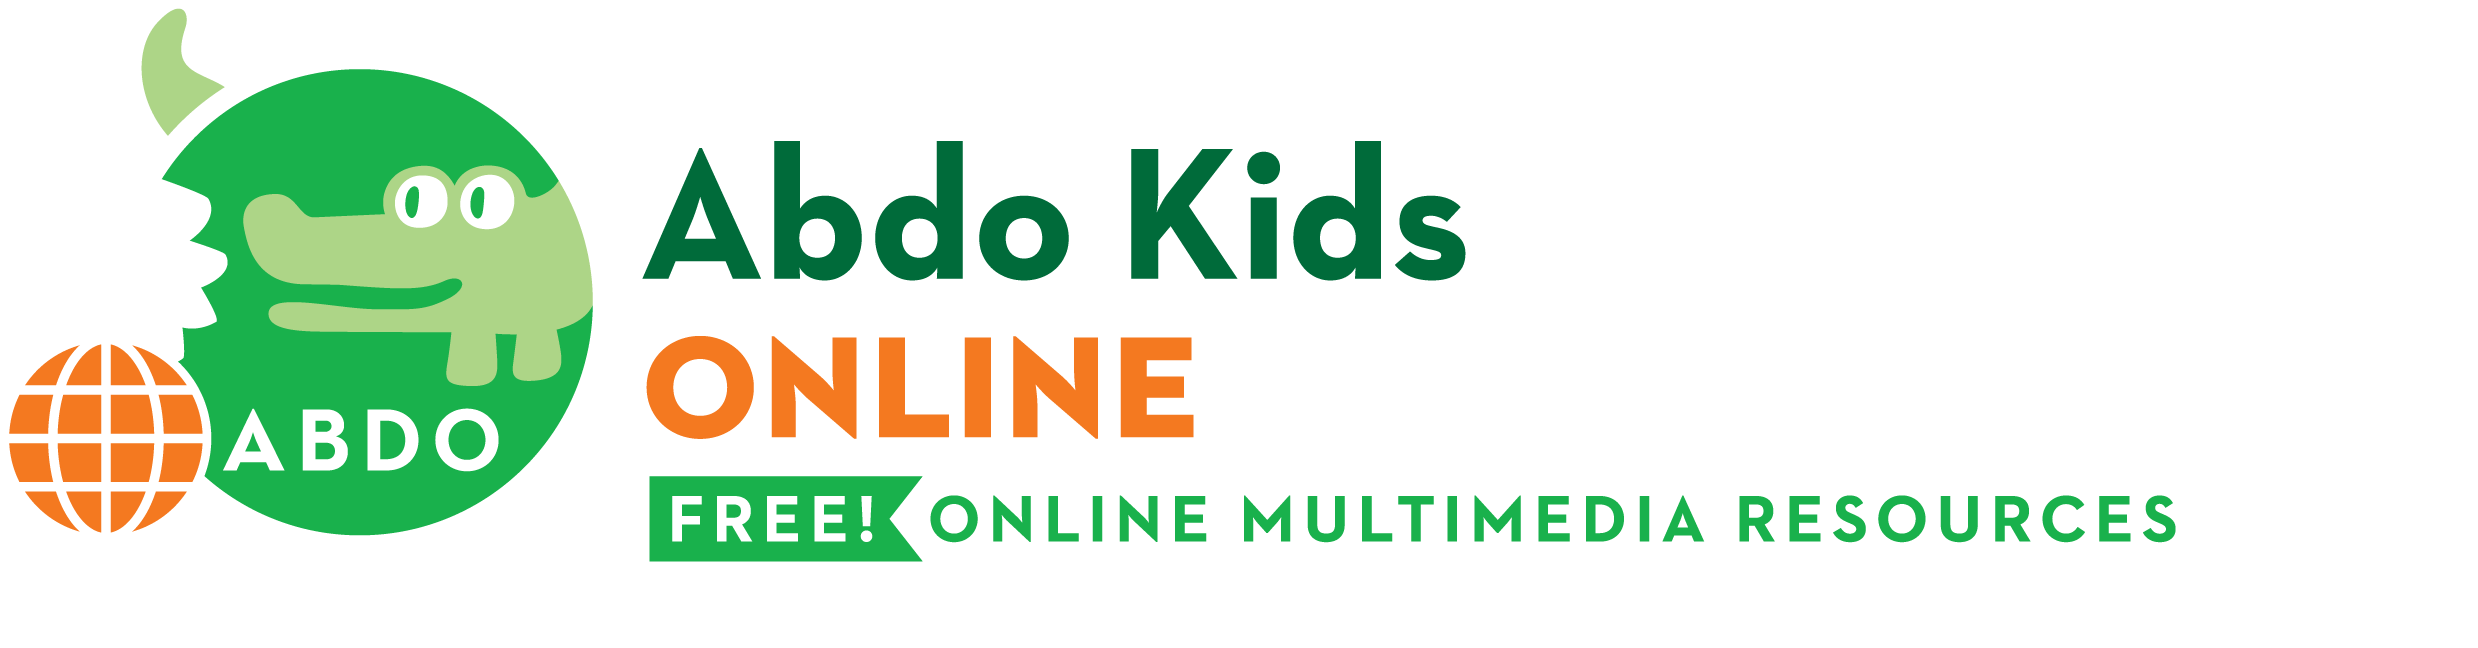 Abdo Kids Online